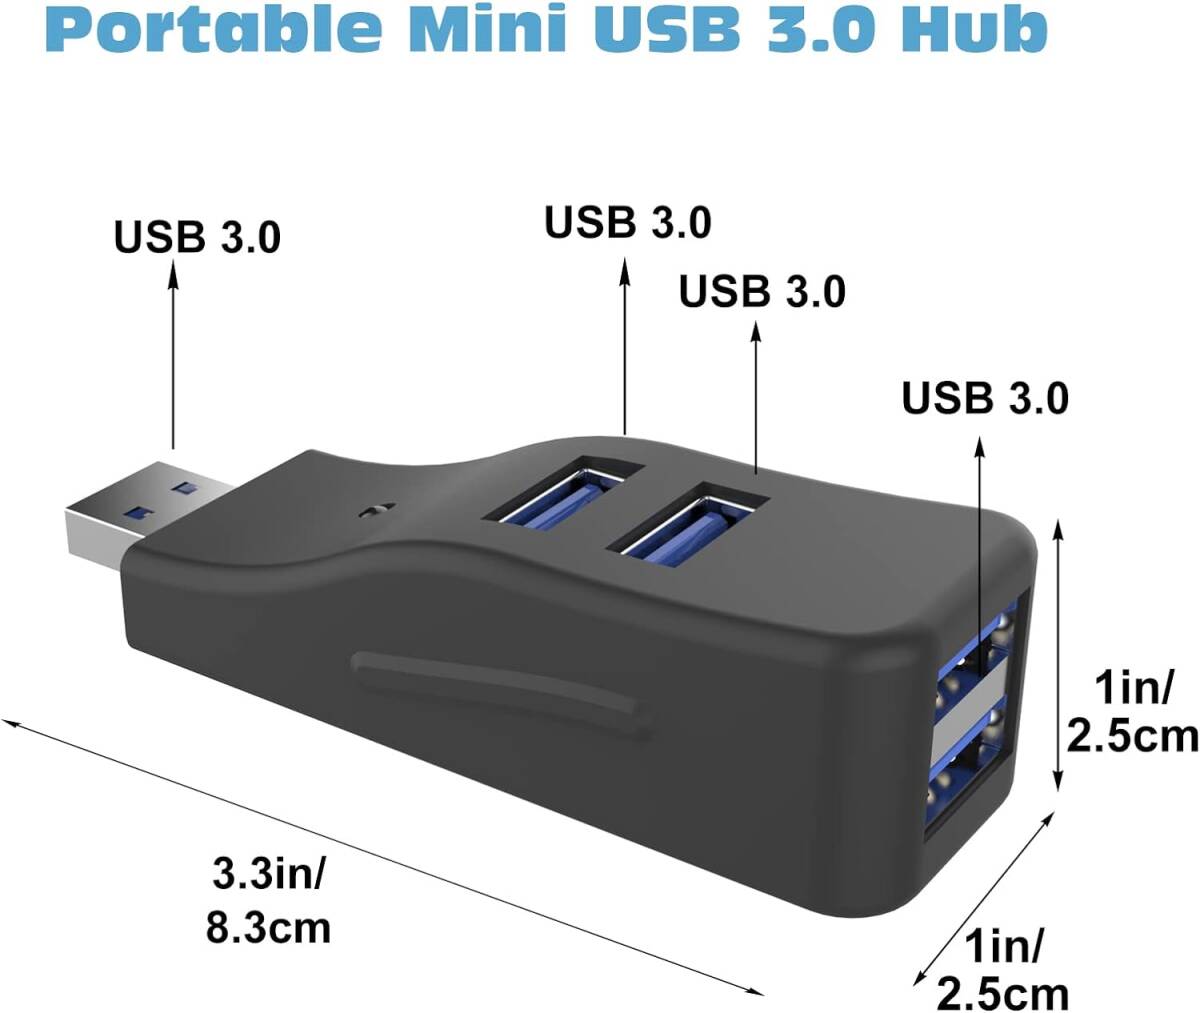 USB 3.0ハブ 4ポート スプリッター LED付き コンボハブ 超小型 バスパワー ミニUSBポート 高速データ転送 軽量 携帯便利 直挿し コンパクト_画像2